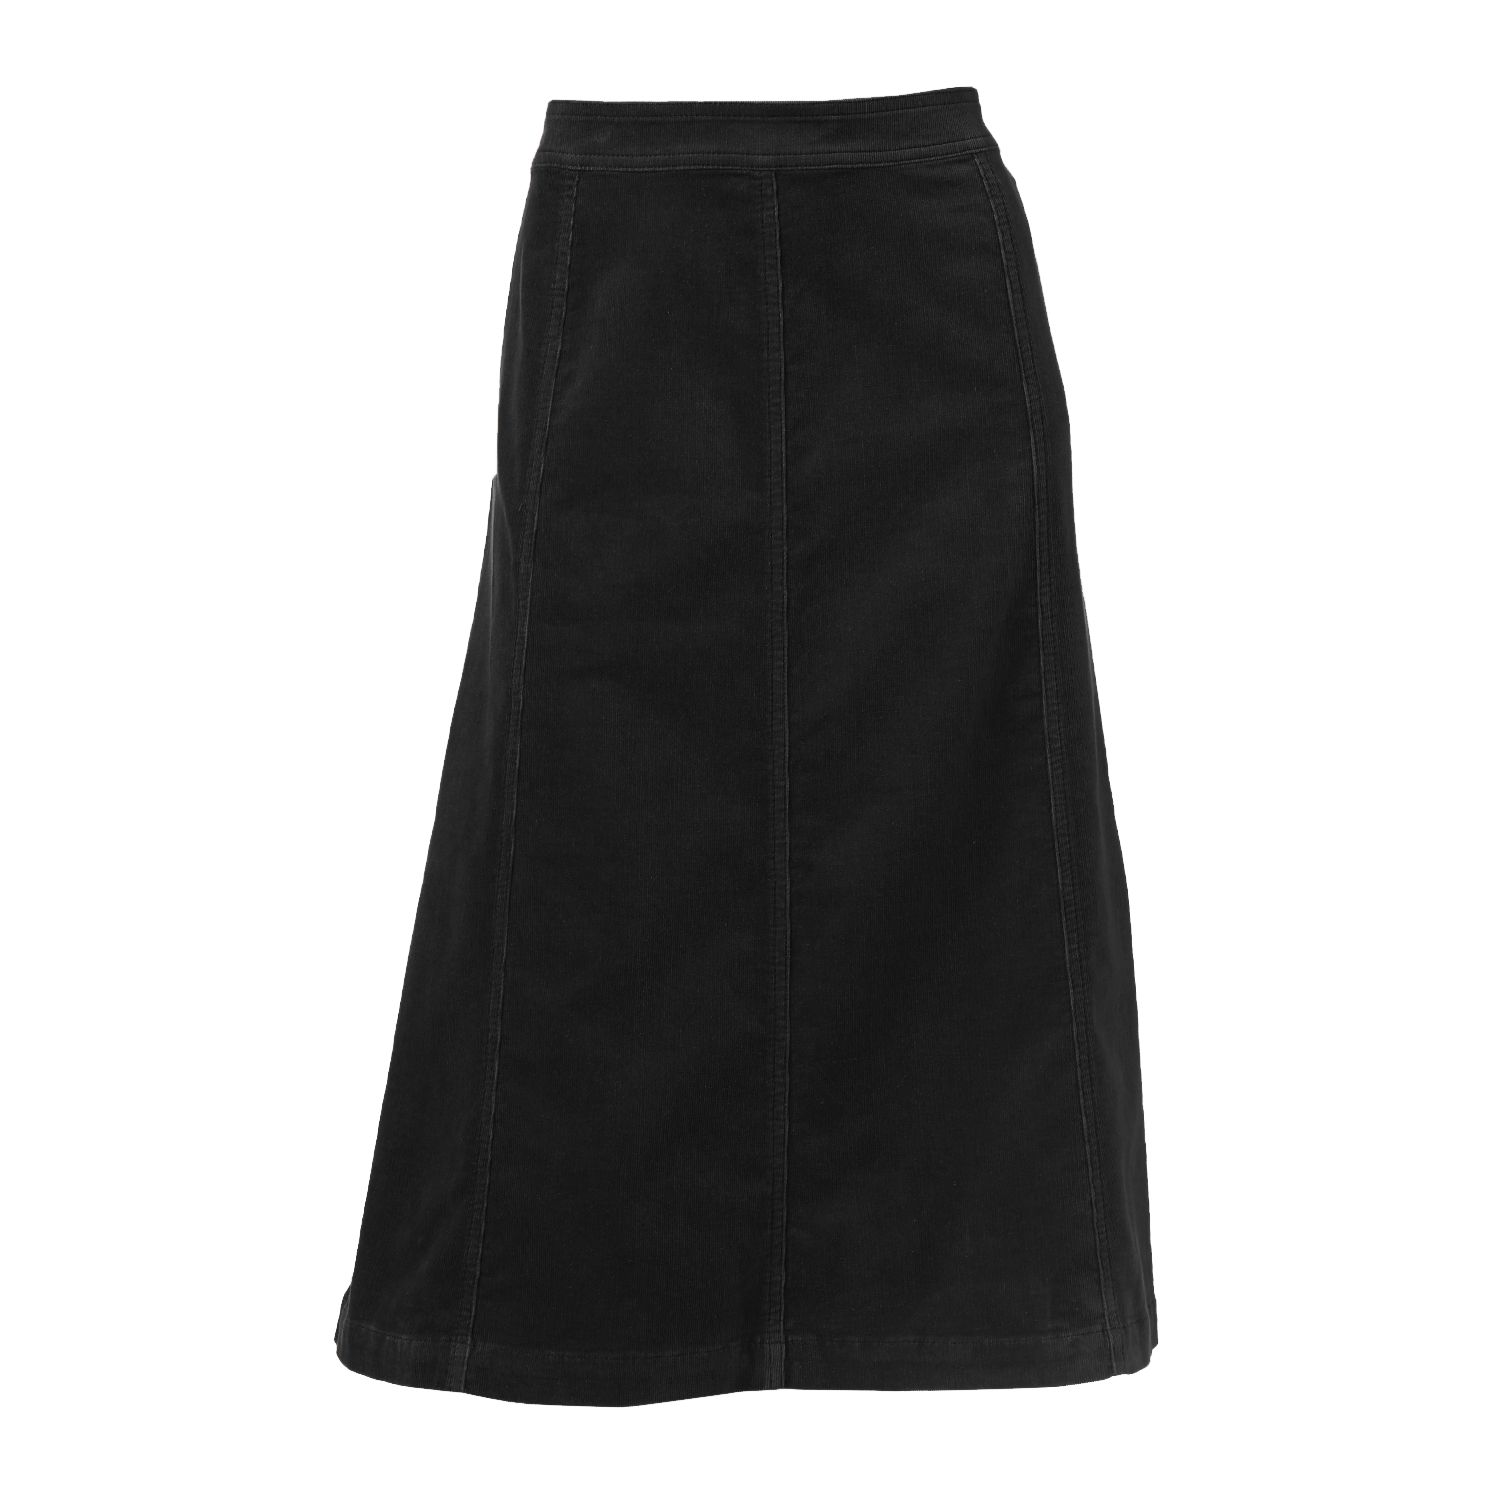 kohls long black skirt